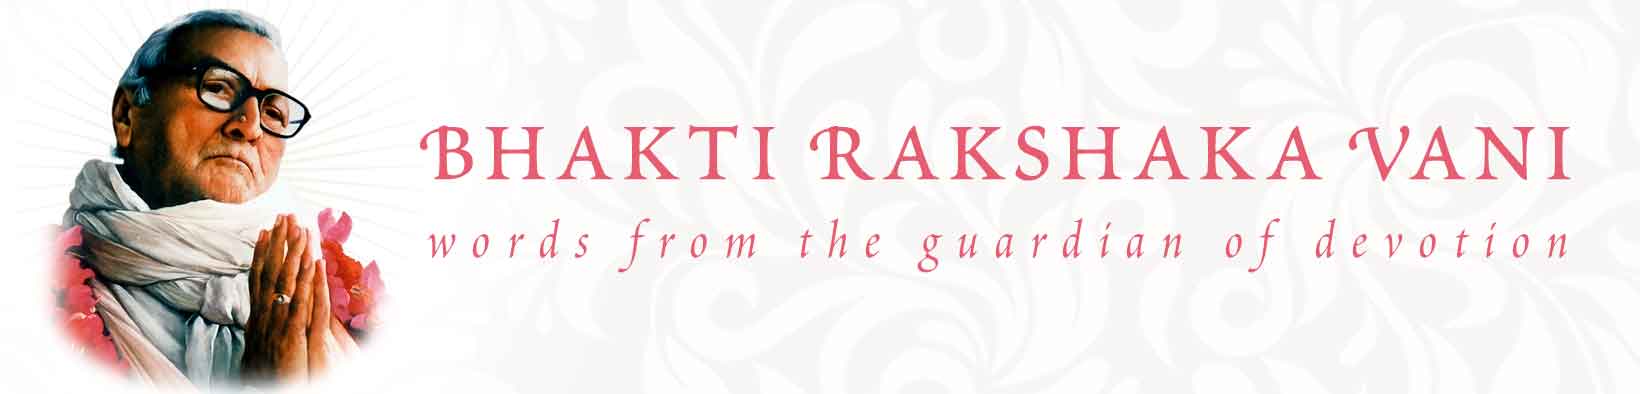 Bhakti Rakshaka Vani - Youtube Channel